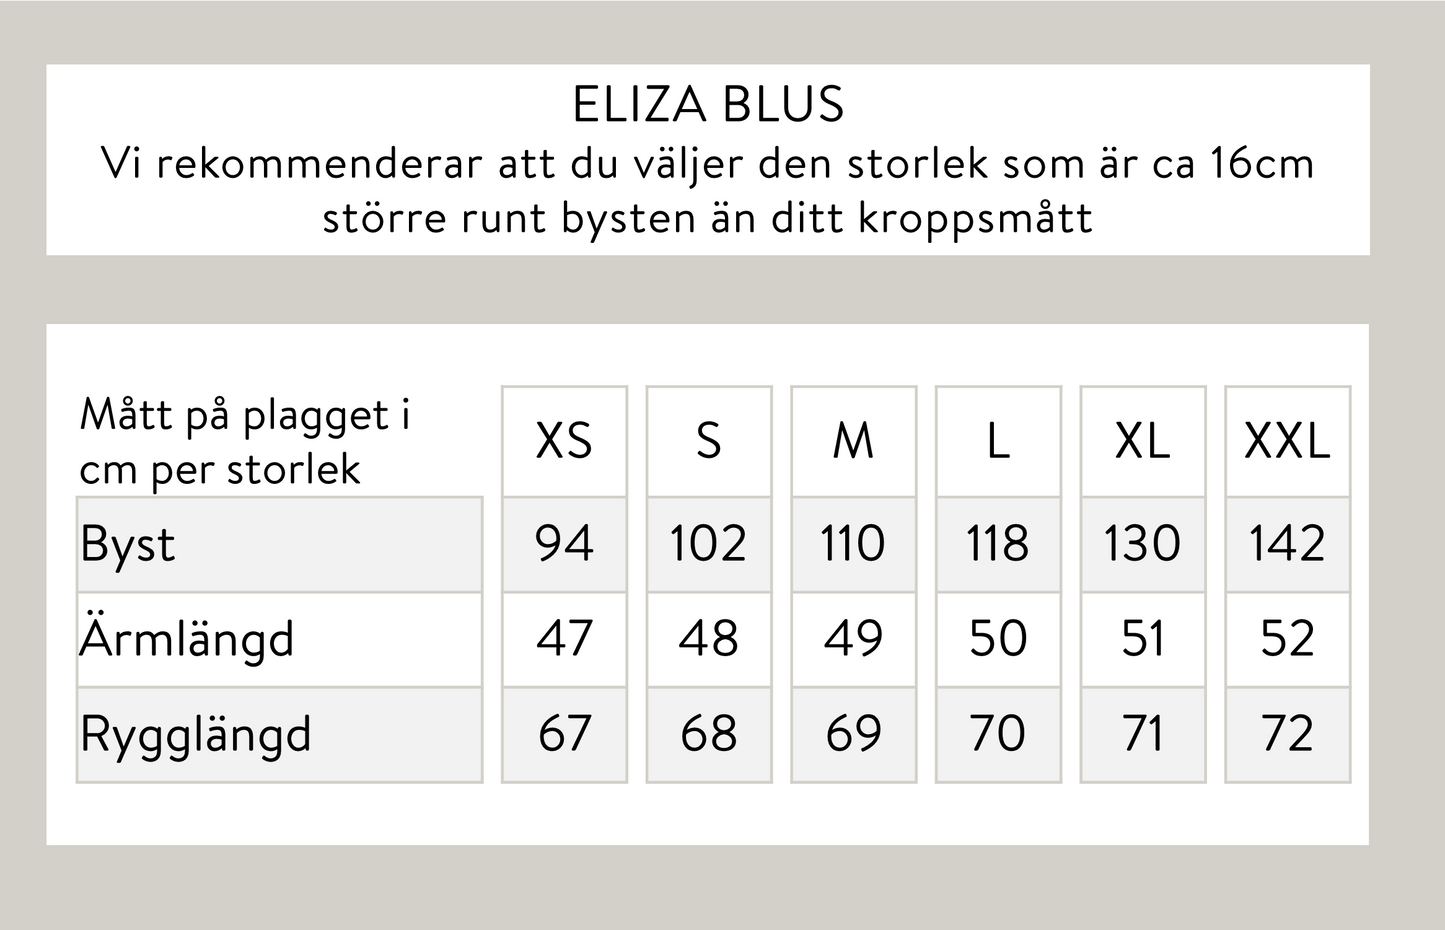 Eliza blus - Offwhite